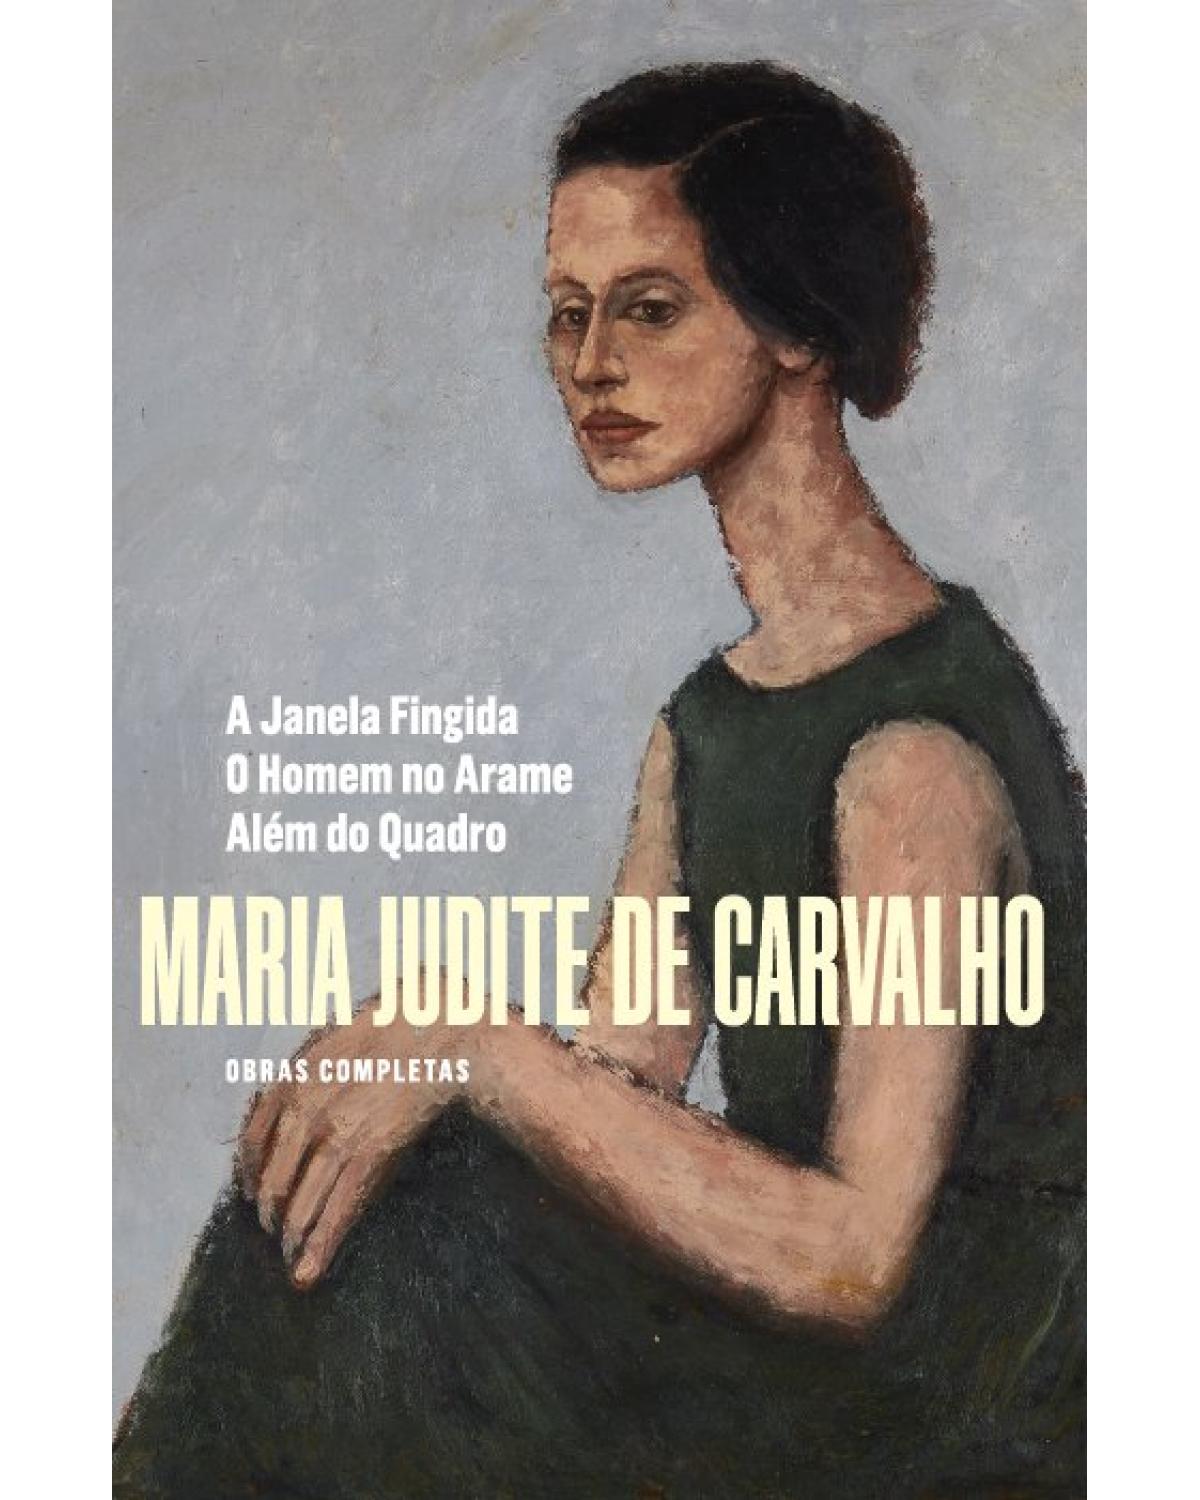 Obras Completas de Maria Judite de Carvalho - Vol. IV - Volume 4: A janela fingida - O homem no arame - Além do quadro - 1ª Edição | 2019